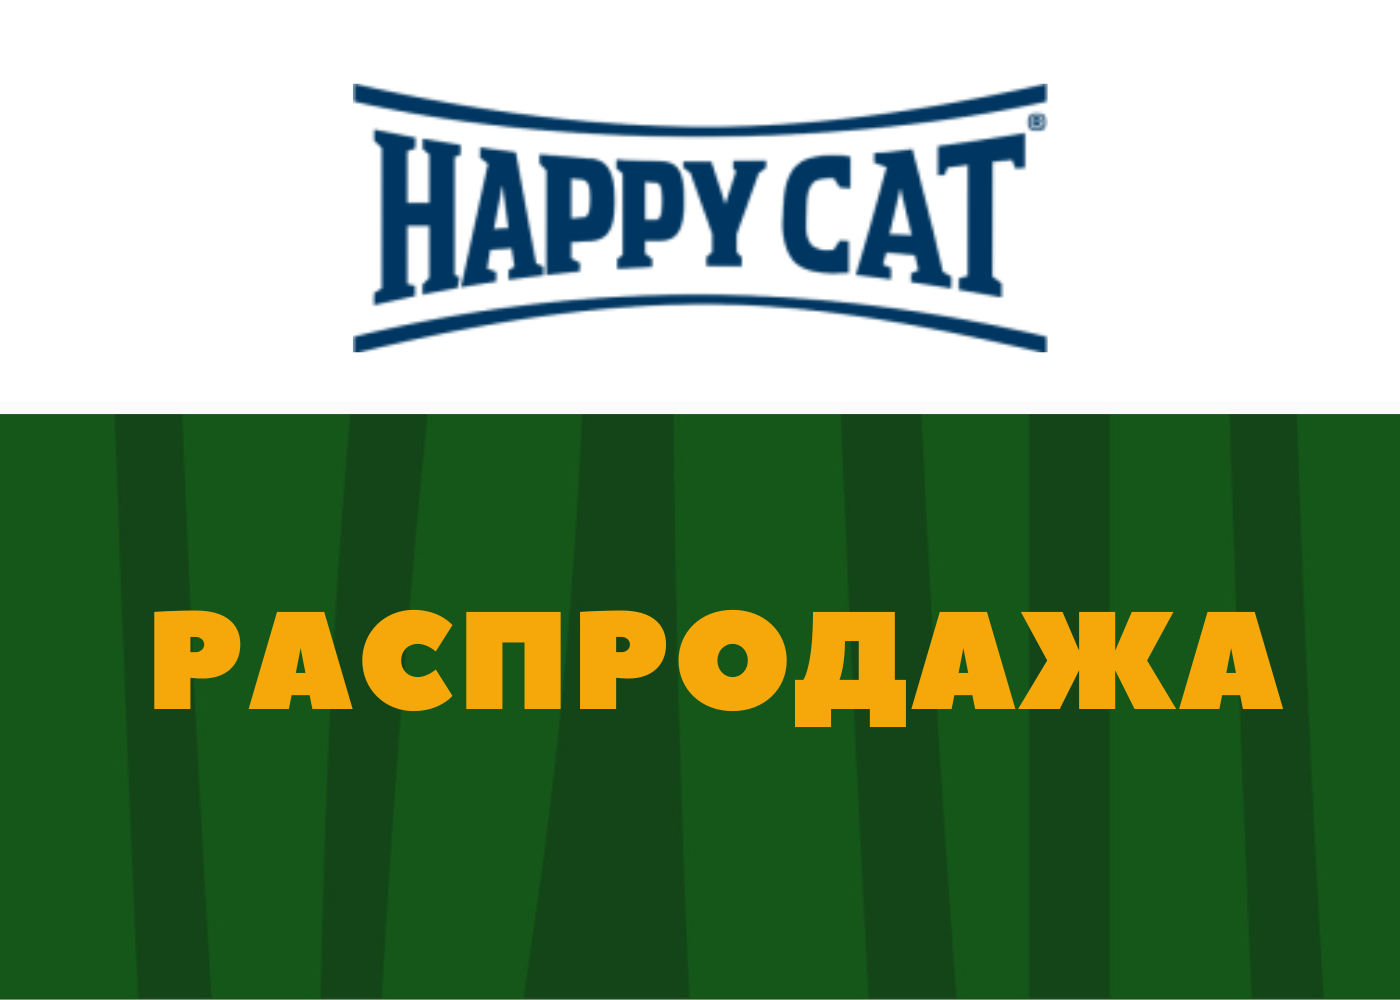 Распродажа продукции Happy Cat